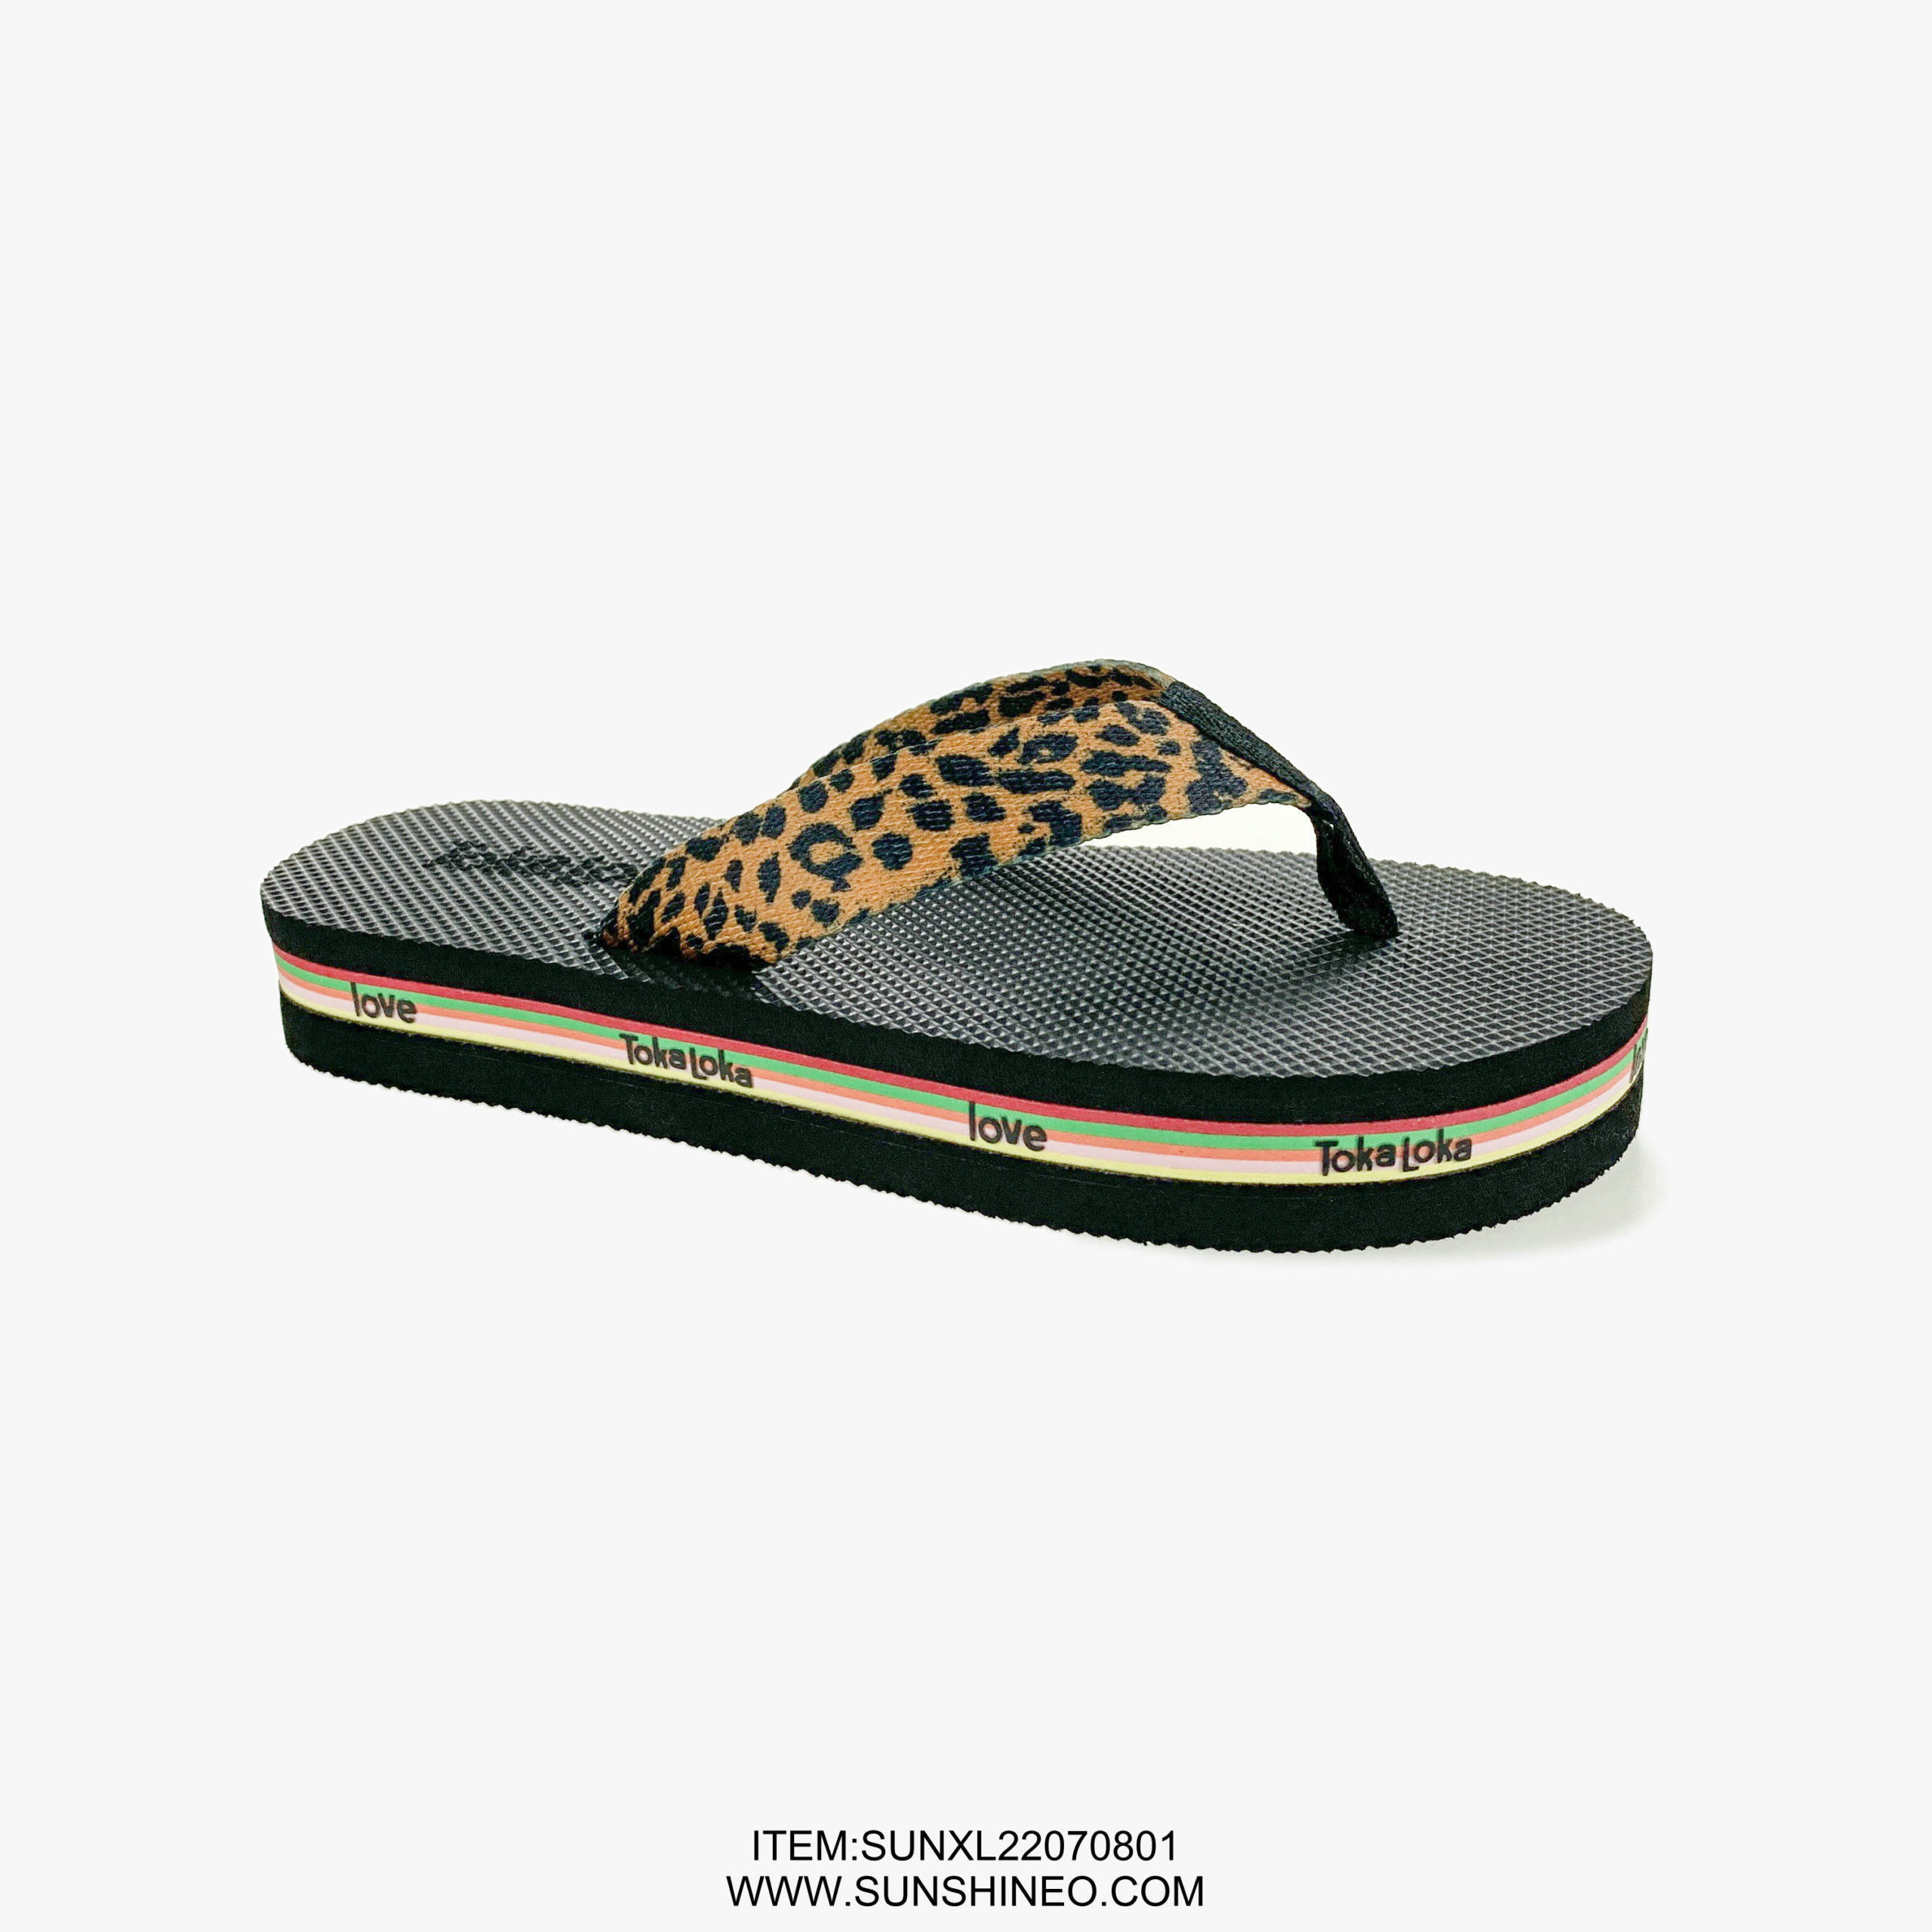 SUNXL22070801 flip flop sandals